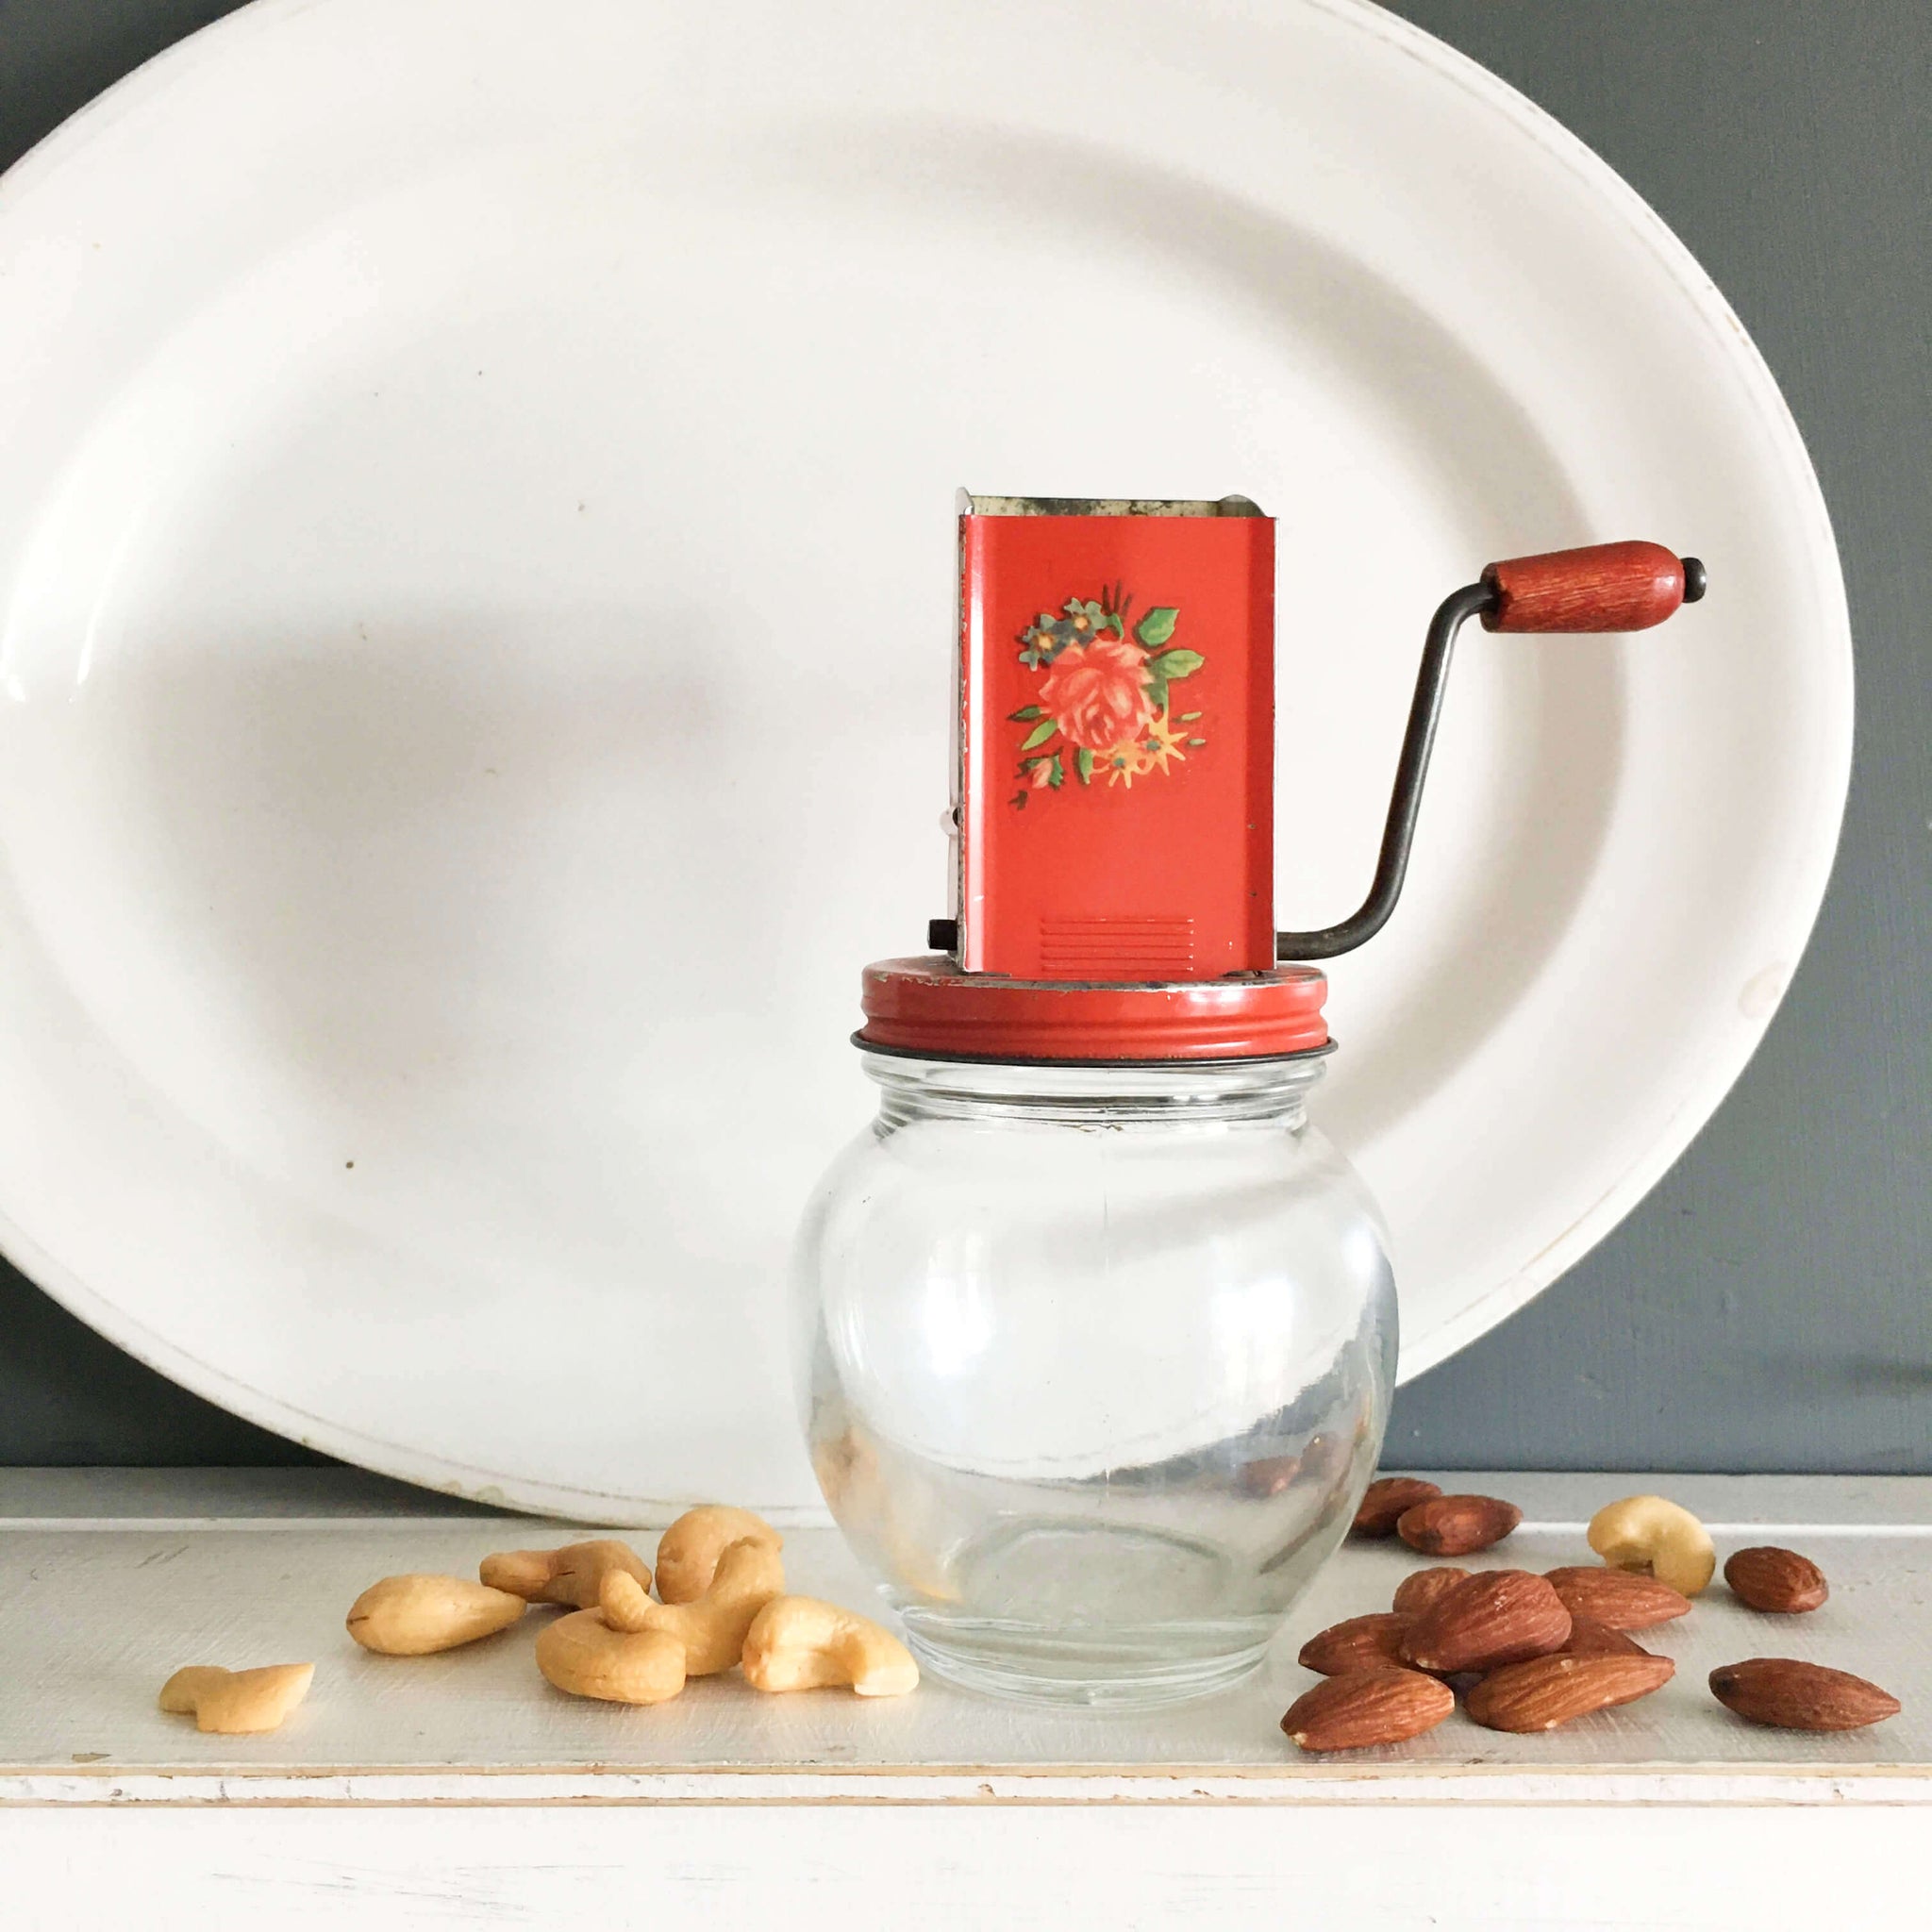 Vintage Style Nut Grinder - Whisk